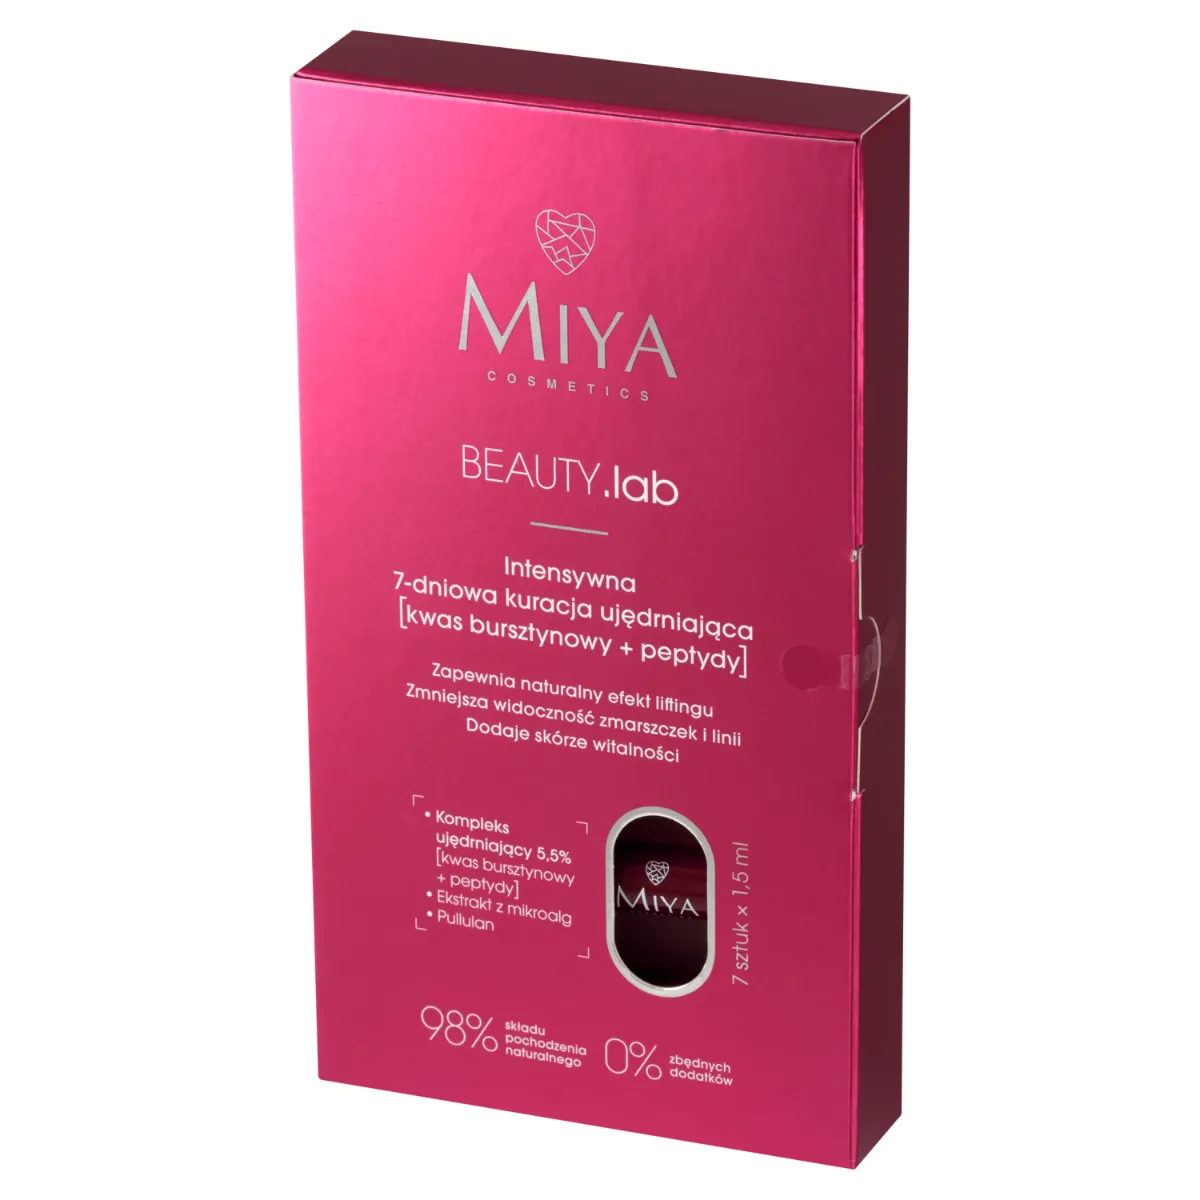 Miya Cosmetics BEAUTY.lab Intensywna 7-dniowa kuracja ujędrniająca, 7 x 1,5 ml 